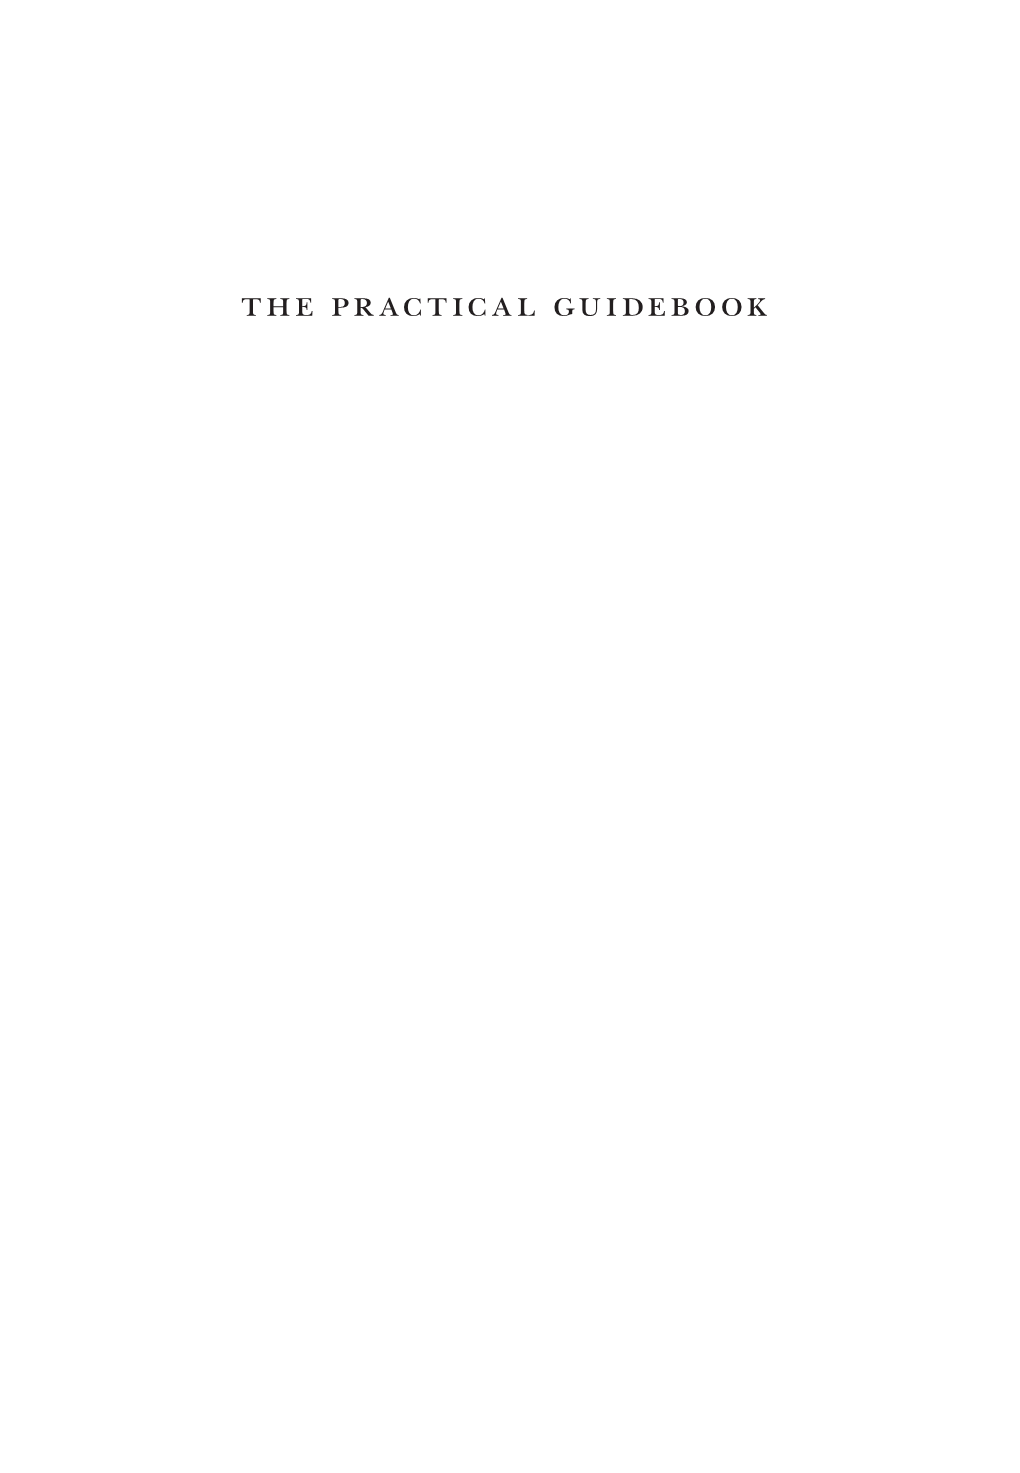 The Practical Guidebook the Practical Guidebook of Essential Islamic Sciences